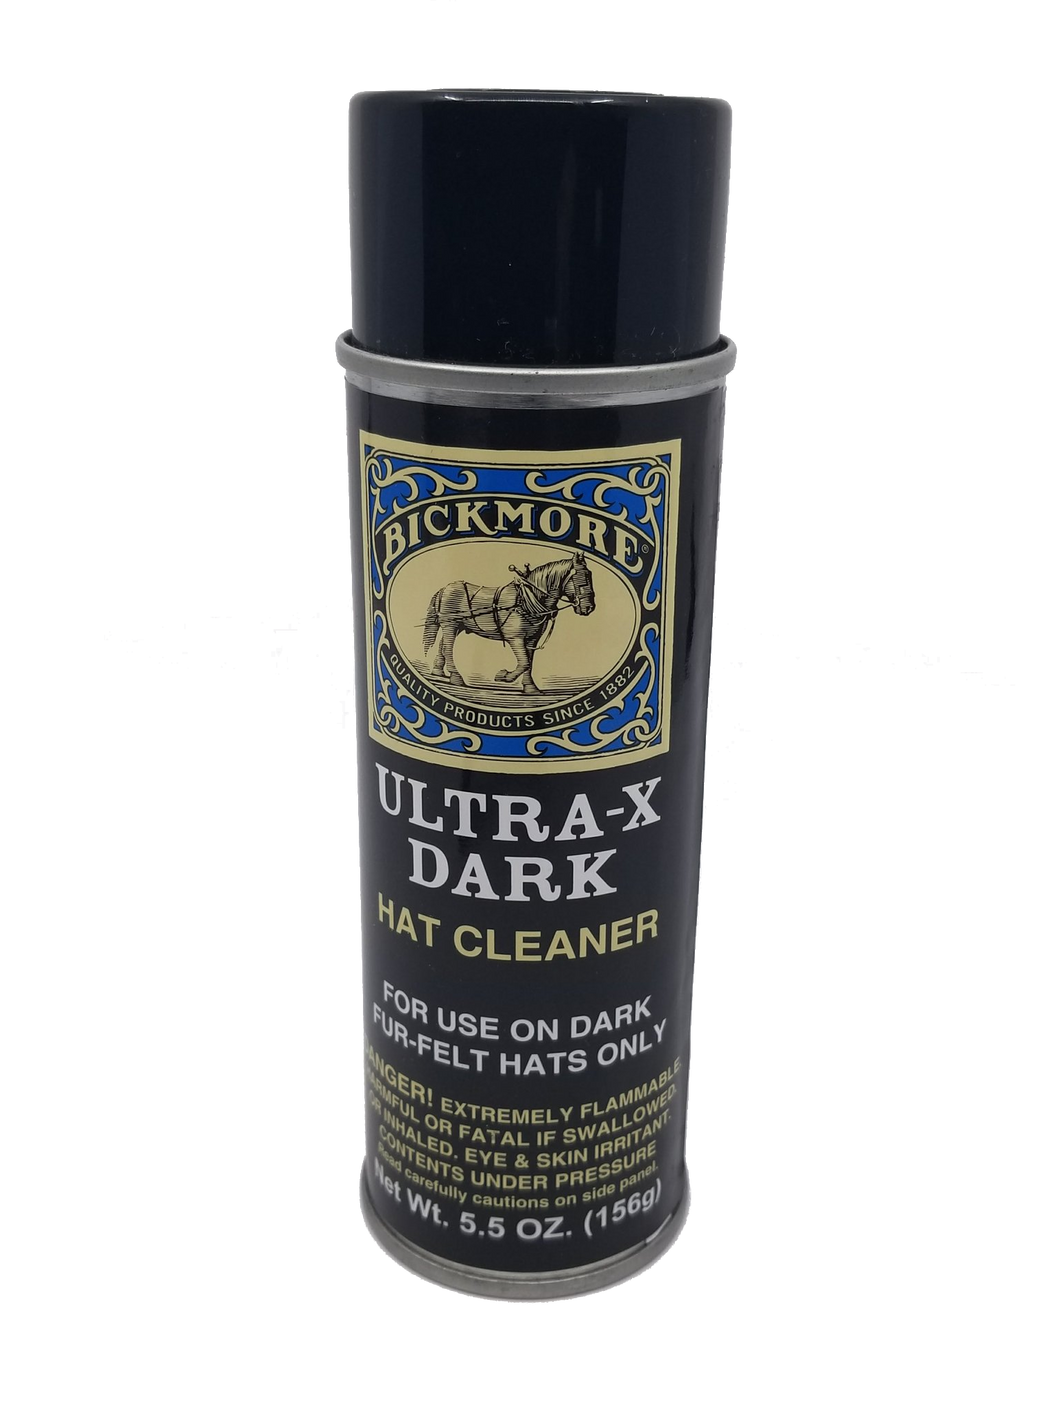 Bickmore Ultra-X Dark Hat Cleaner Spray